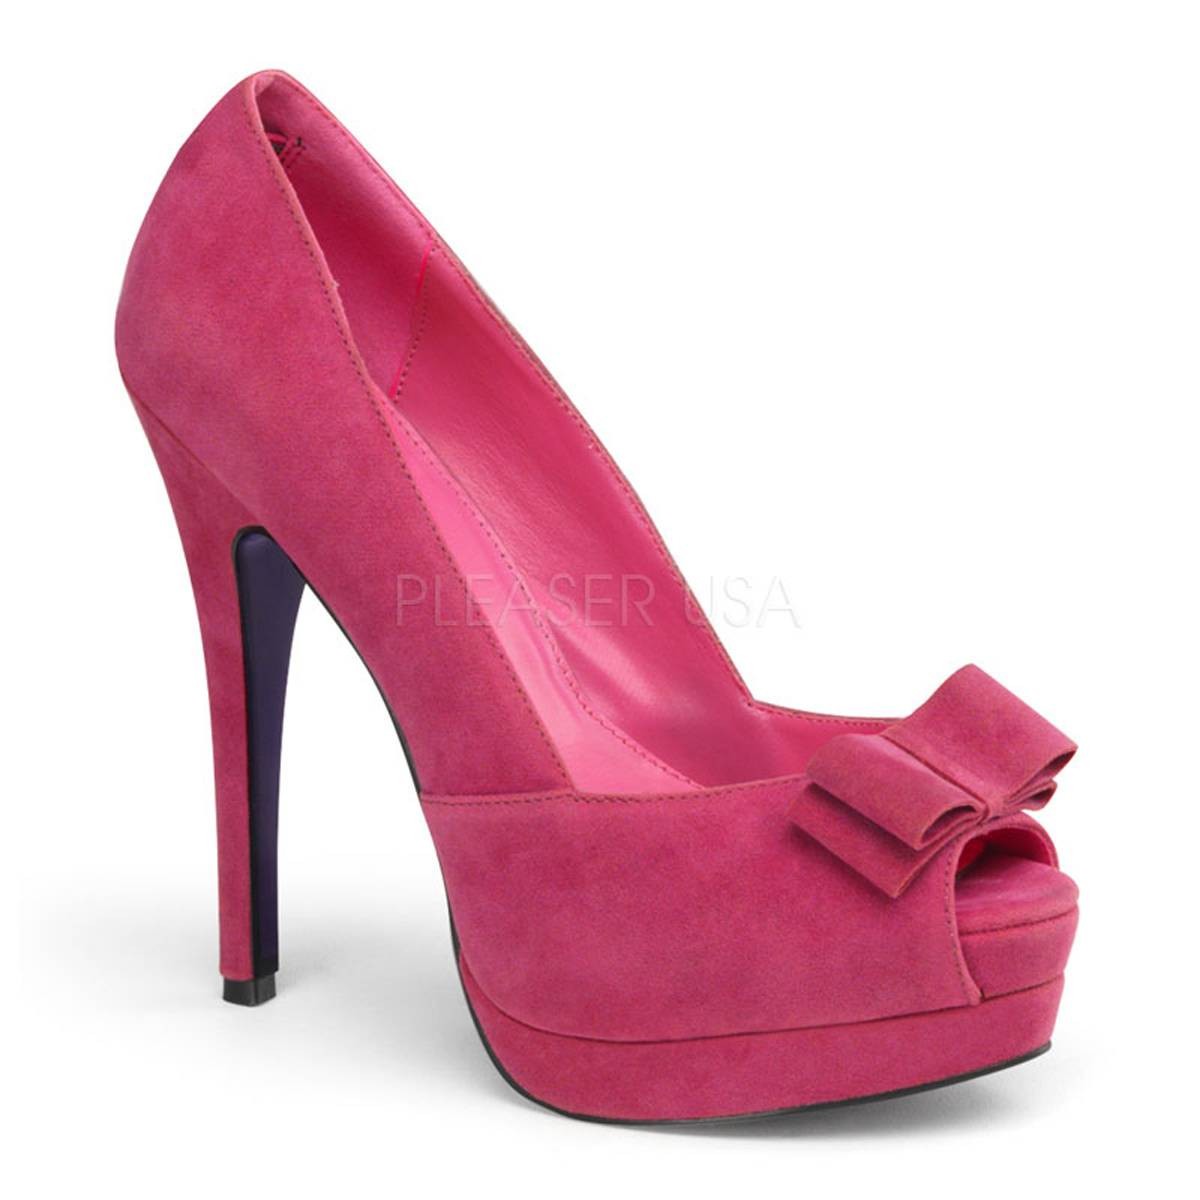 Highheels - BELLA 10 ° Damen Peep Toe ° Violett Matt ° Pin Up Couture  - Onlineshop RedSixty